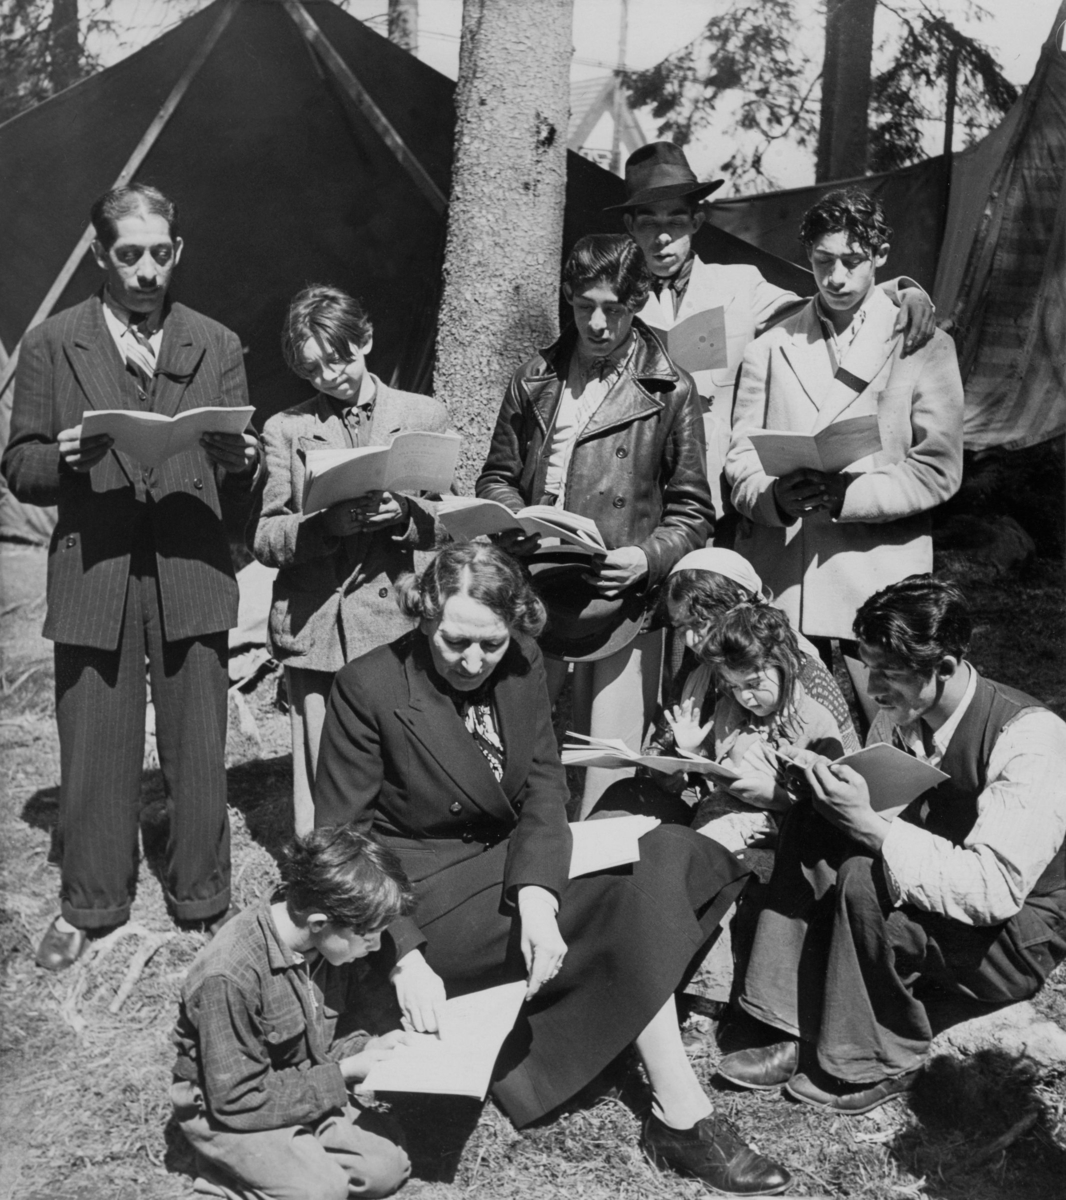 Här syns Sveriges första ambulerande skola för romer, år 1946. I mitten av bilden sitter klassens lärare omgärdad av elever i alla åldrar som läser i studiematerial. Bakom dem syns tältdukar.